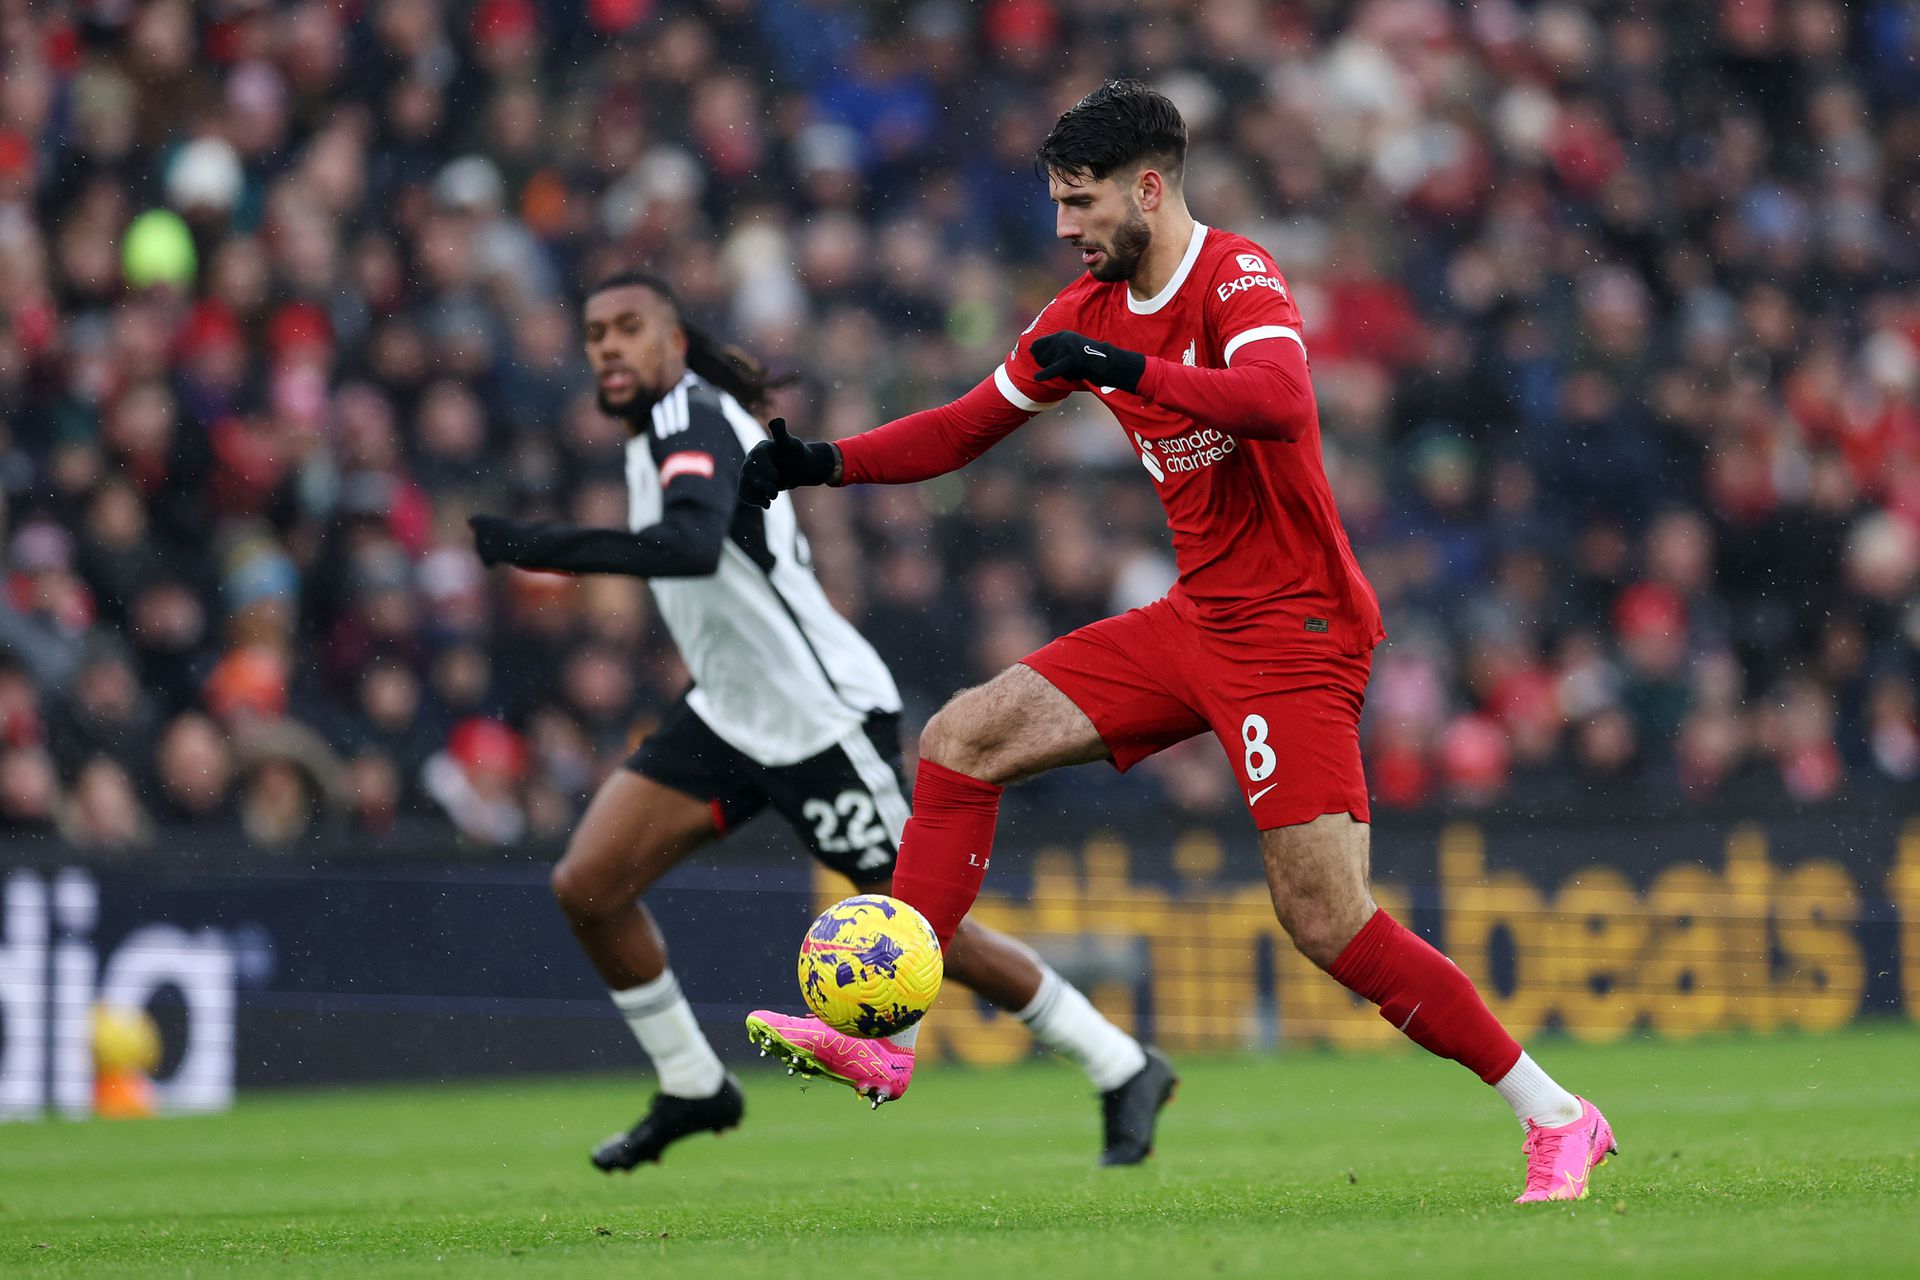 Szoboszlai jól futballozott a Fulham ellen, ám a hajrában nem segíthetett a Liverpoolnak – a csapat végül nélküle is megoldotta a fordítást Fotó: Getty Images